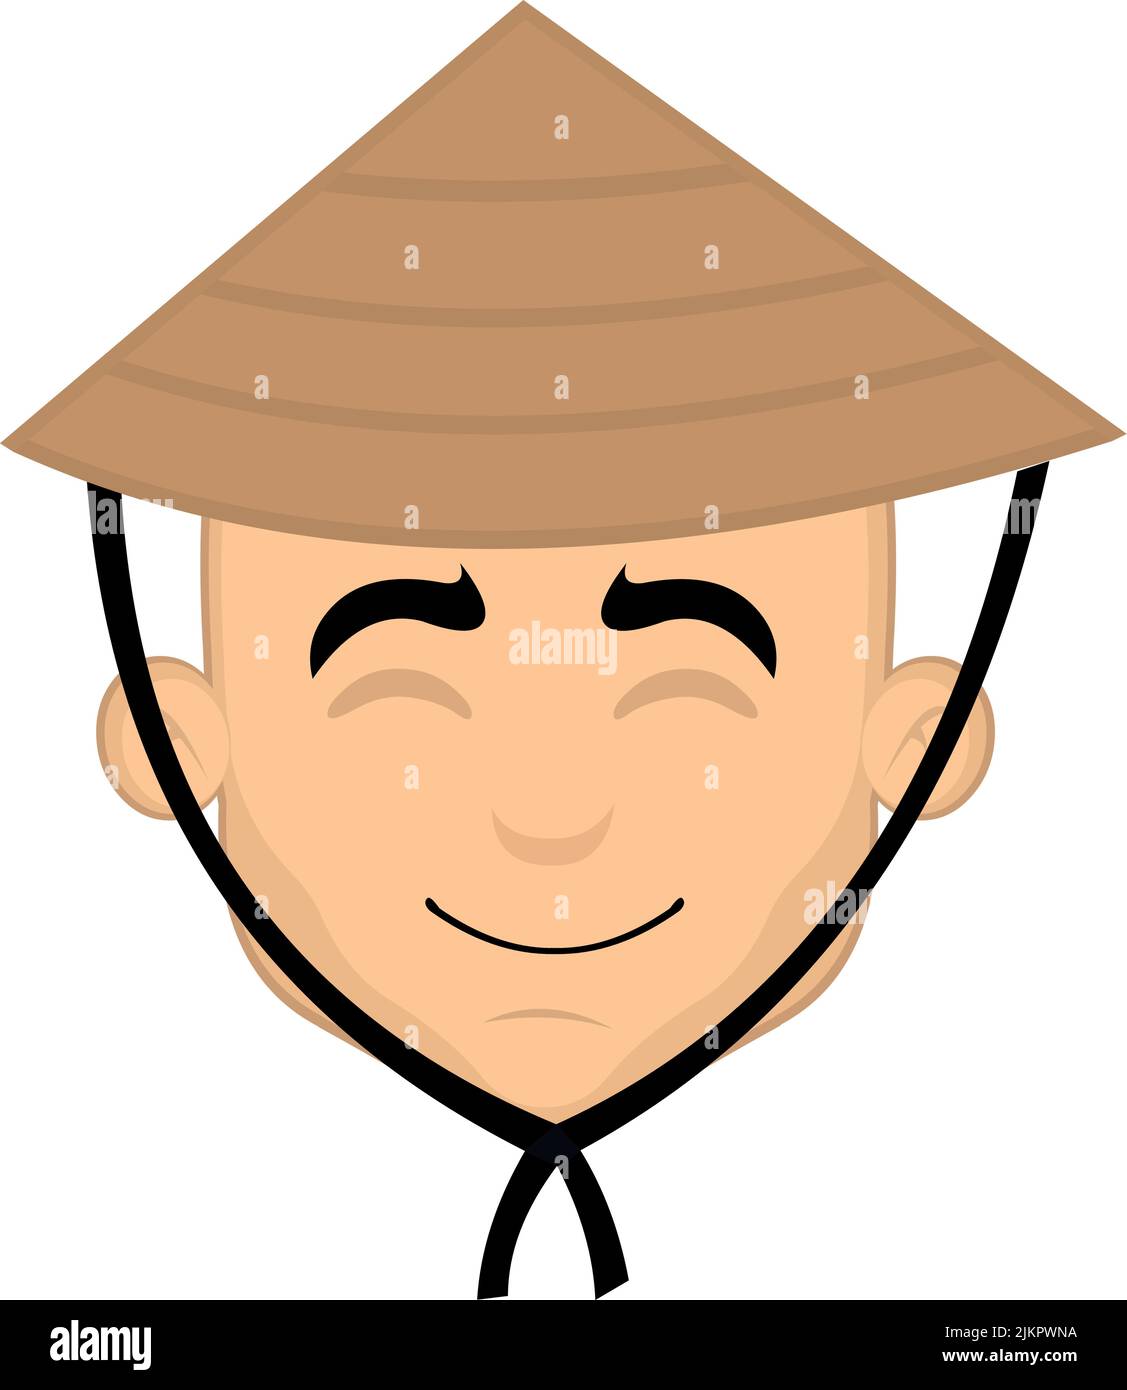 Illustration vectorielle du visage d'un homme de dessin animé avec une expression gaie et un chapeau de culture chinoise classique Illustration de Vecteur